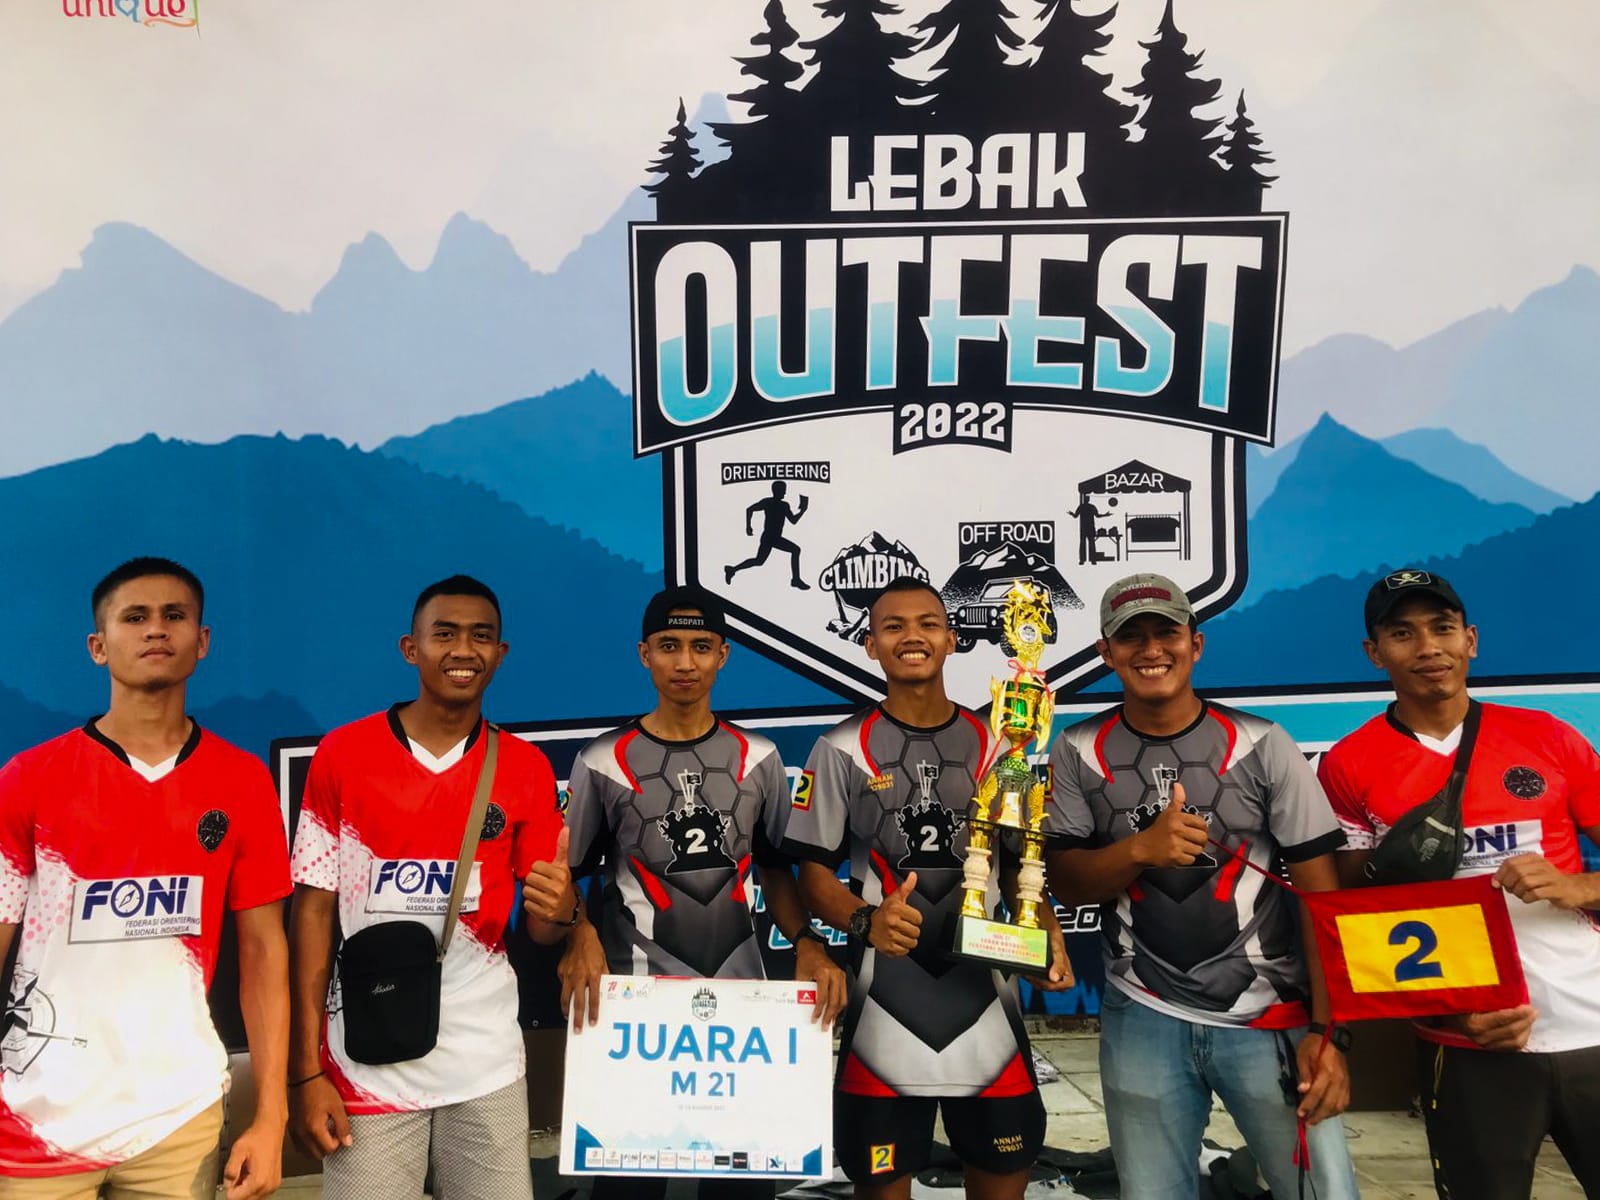 Yonif 2 Marinir Kembali Torehkan Prestasi Dalam Kejuaraan Orienteering  National Event – Pelopor Wiratama